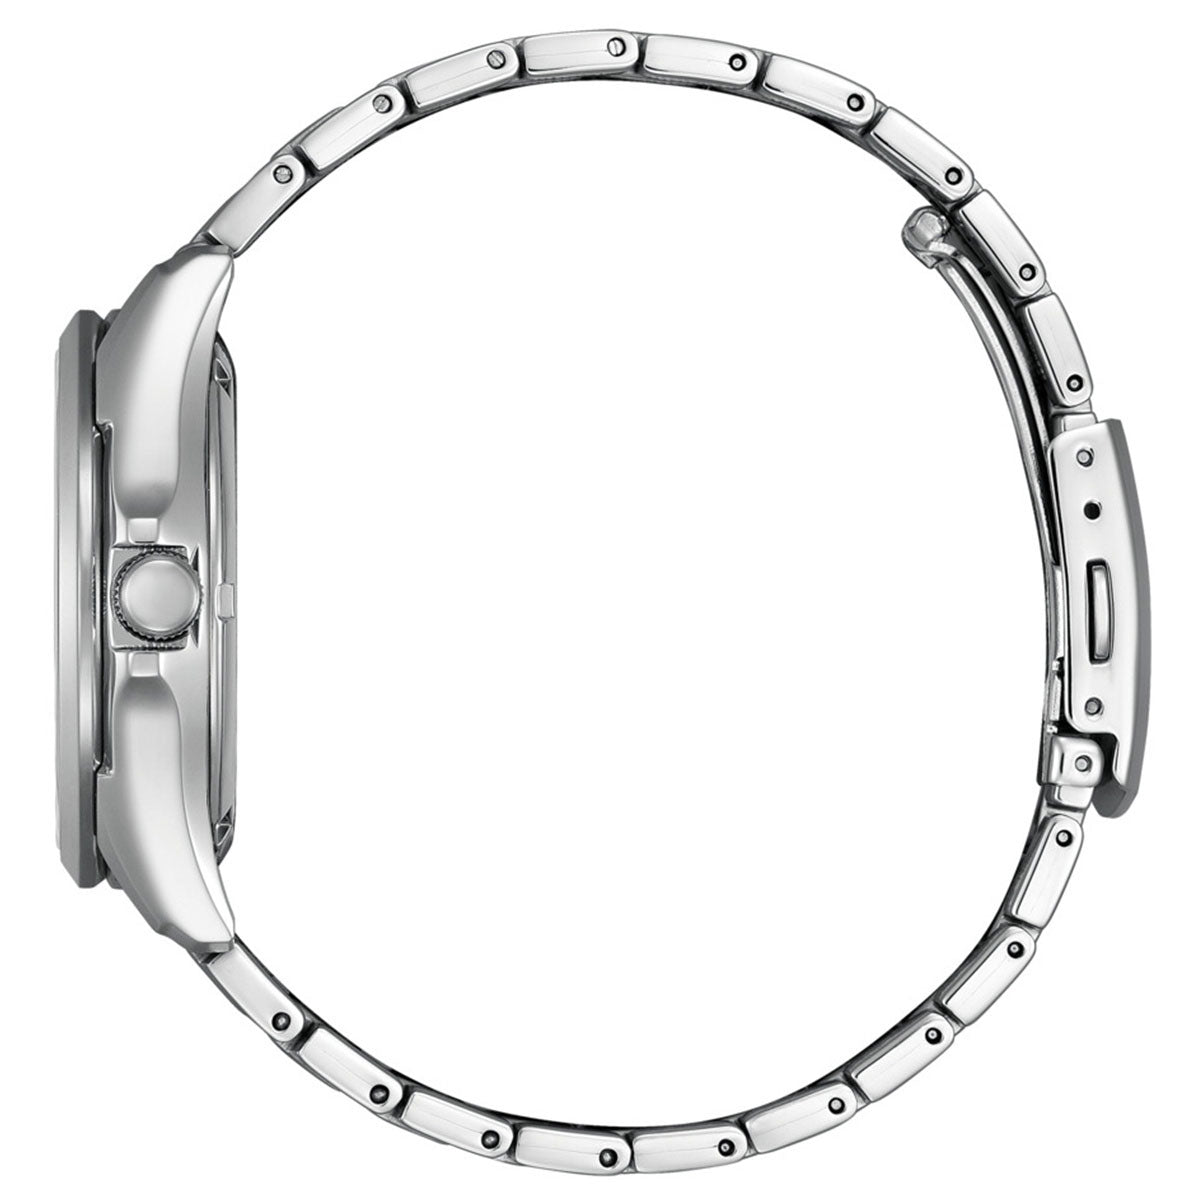 シチズンコレクション CITIZEN COLLECTION メカニカル 自動巻き 機械式 腕時計 メンズ NP1010-78L オープンハート